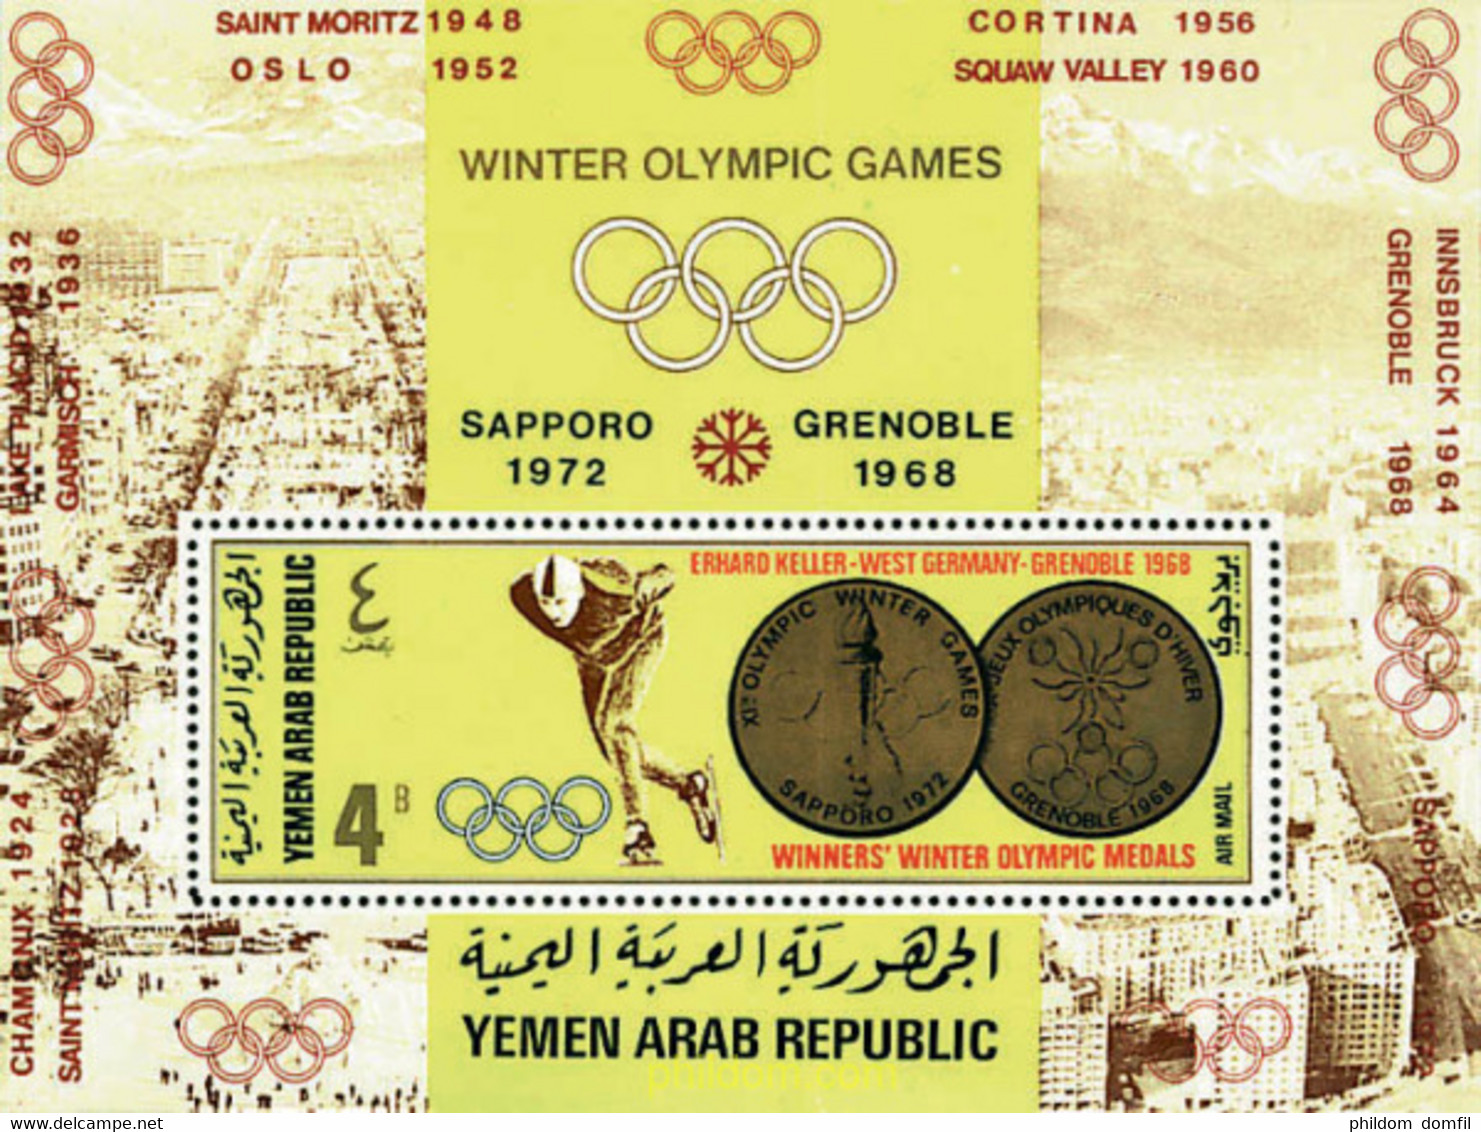 72464 MNH YEMEN. República árabe 1968 MEDALLAS DE ORO DE LOS JUEGOS OLIMPICOS DE INVIERNO - Hiver 1952: Oslo